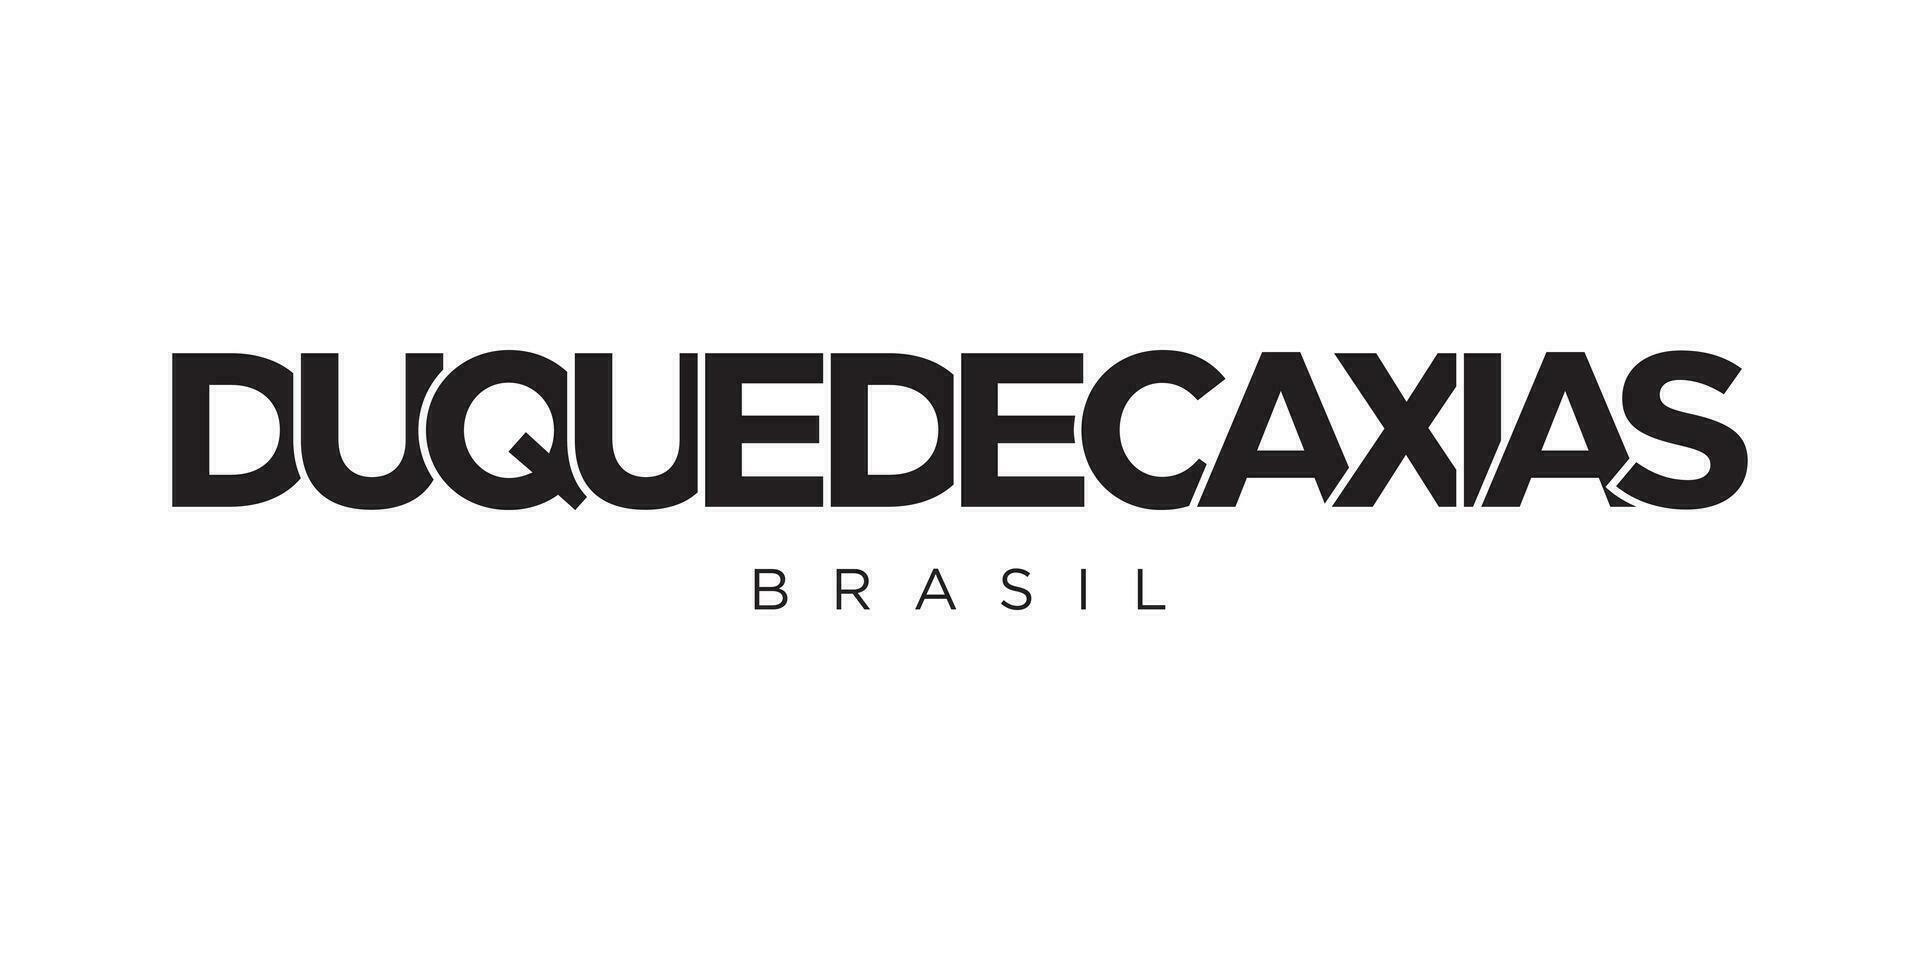 Duque de caxias im das brasil Emblem. das Design Eigenschaften ein geometrisch Stil, Vektor Illustration mit Fett gedruckt Typografie im ein modern Schriftart. das Grafik Slogan Beschriftung.